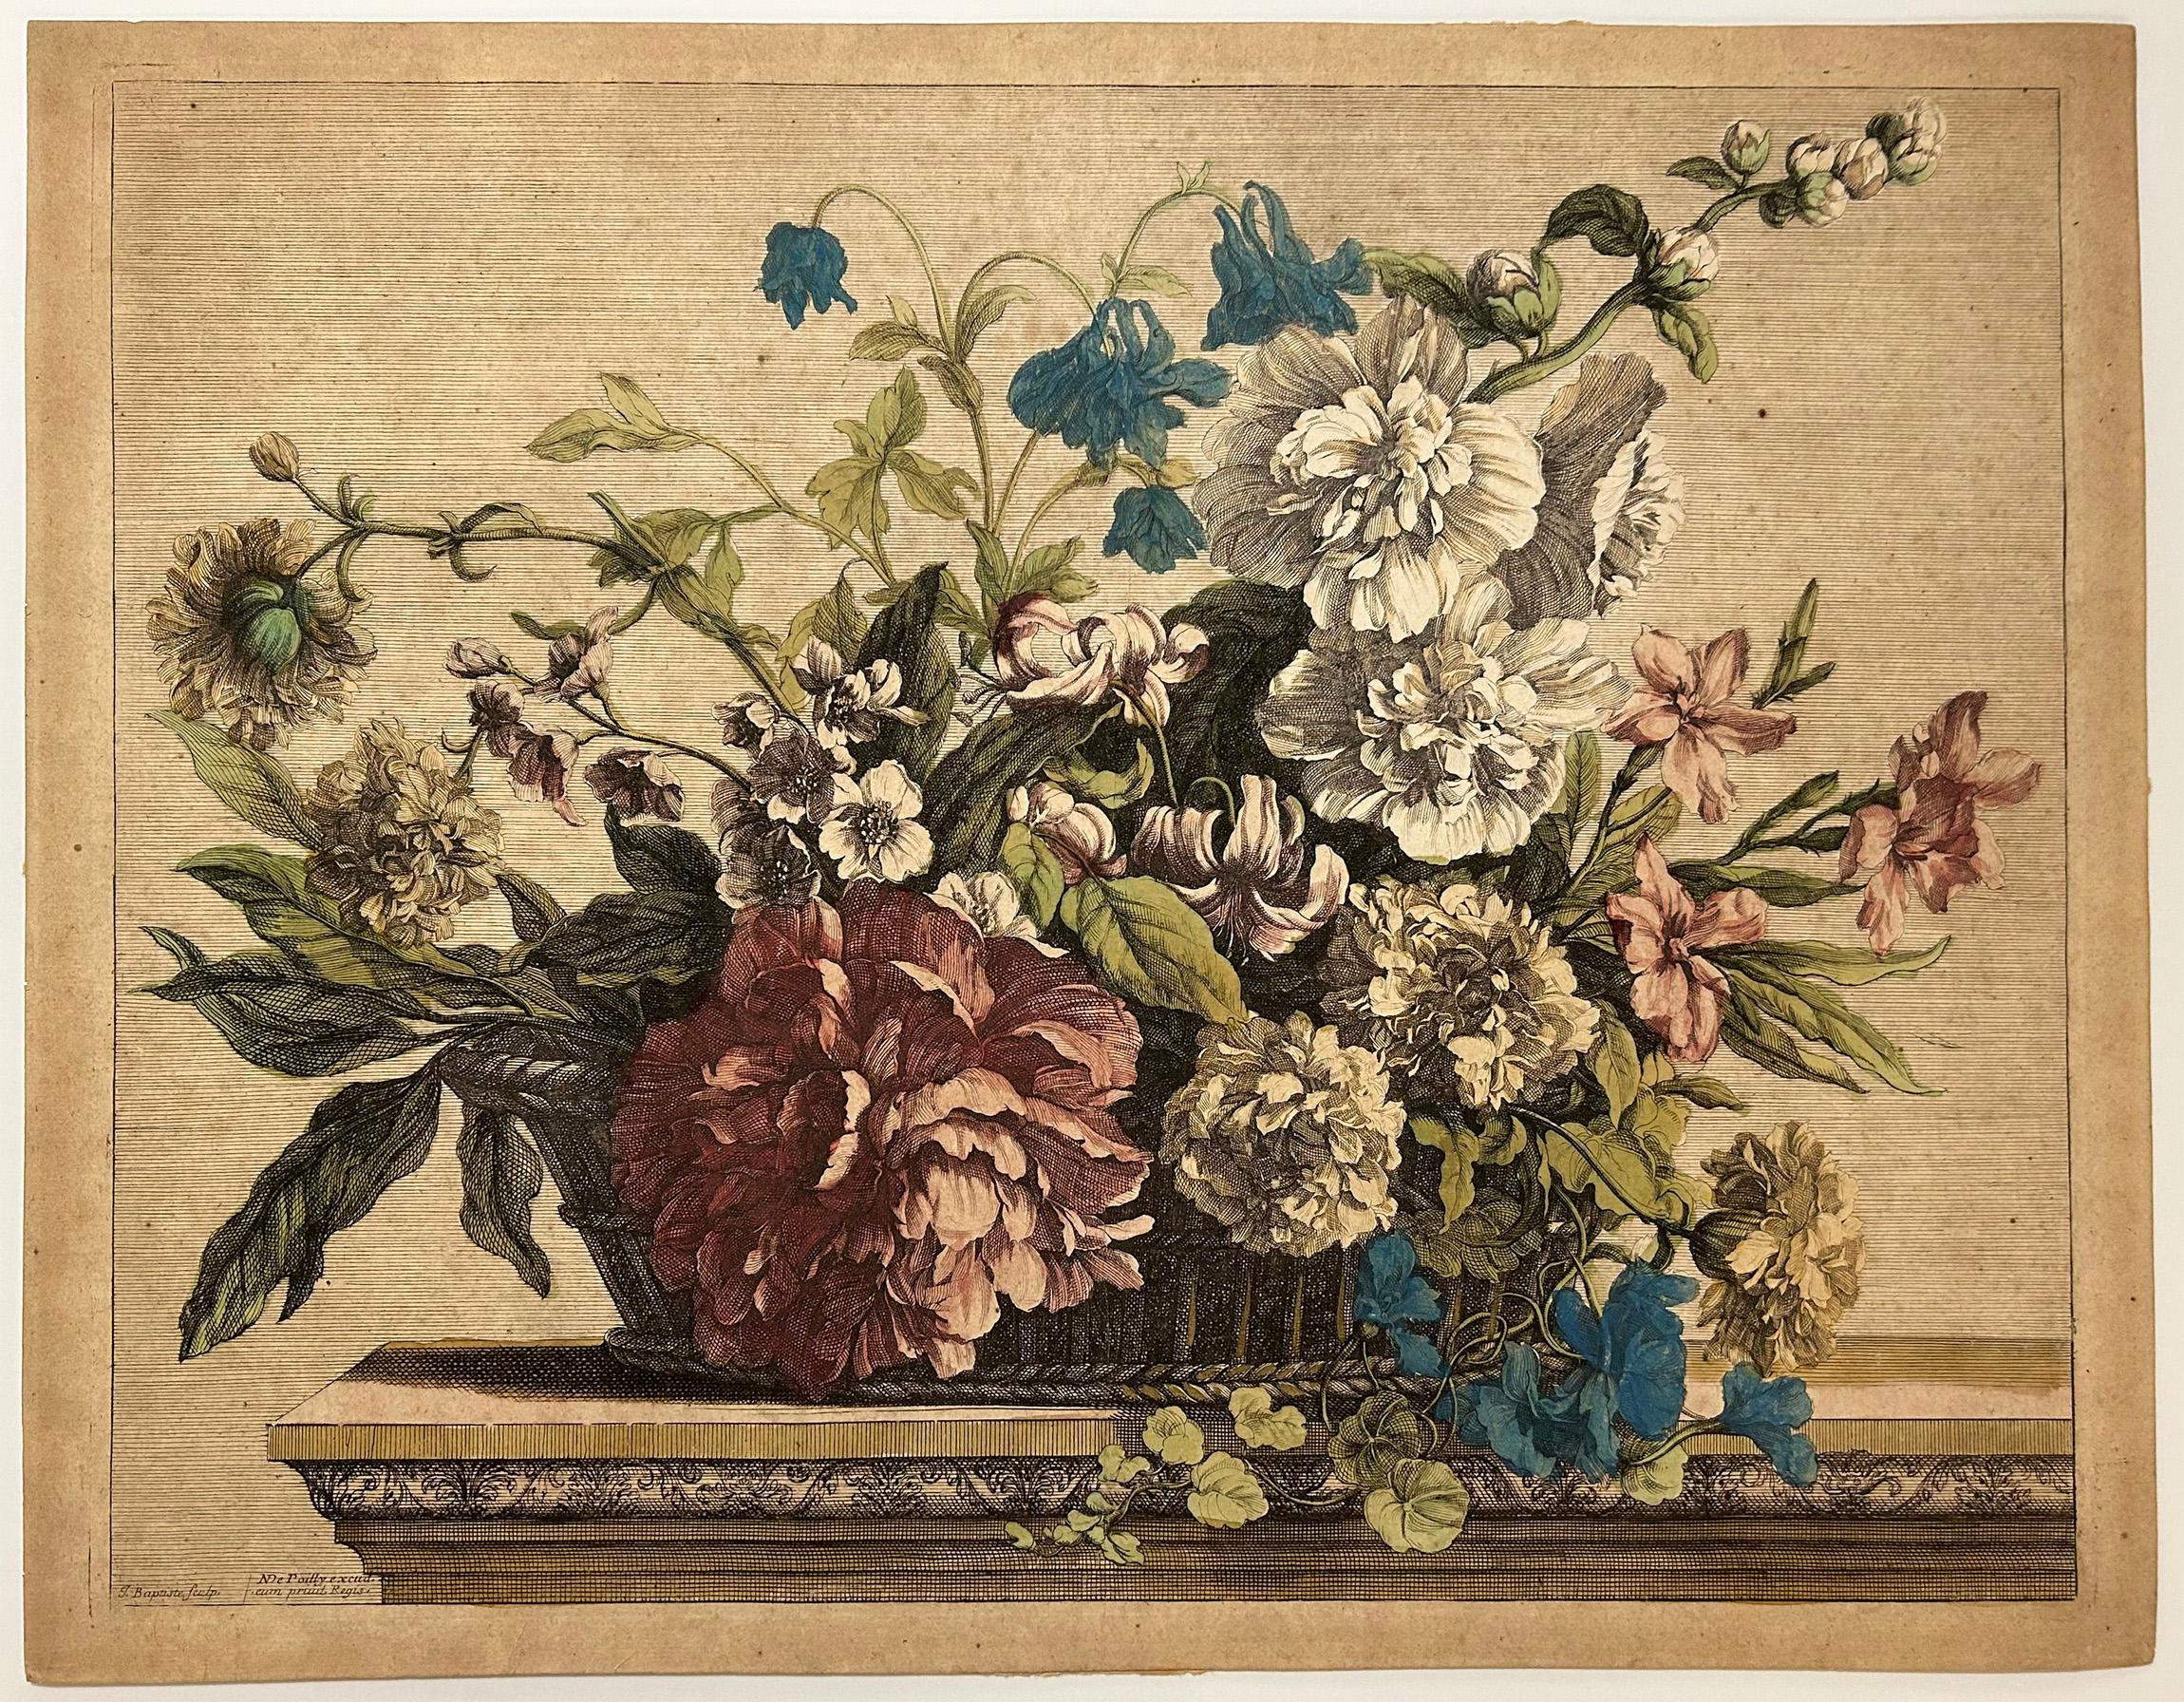 Corbeille de fleurs garnie de rose trémière, ancolie, pivoine, lis, œillets. - Print by Jean-Baptiste Monnoyer